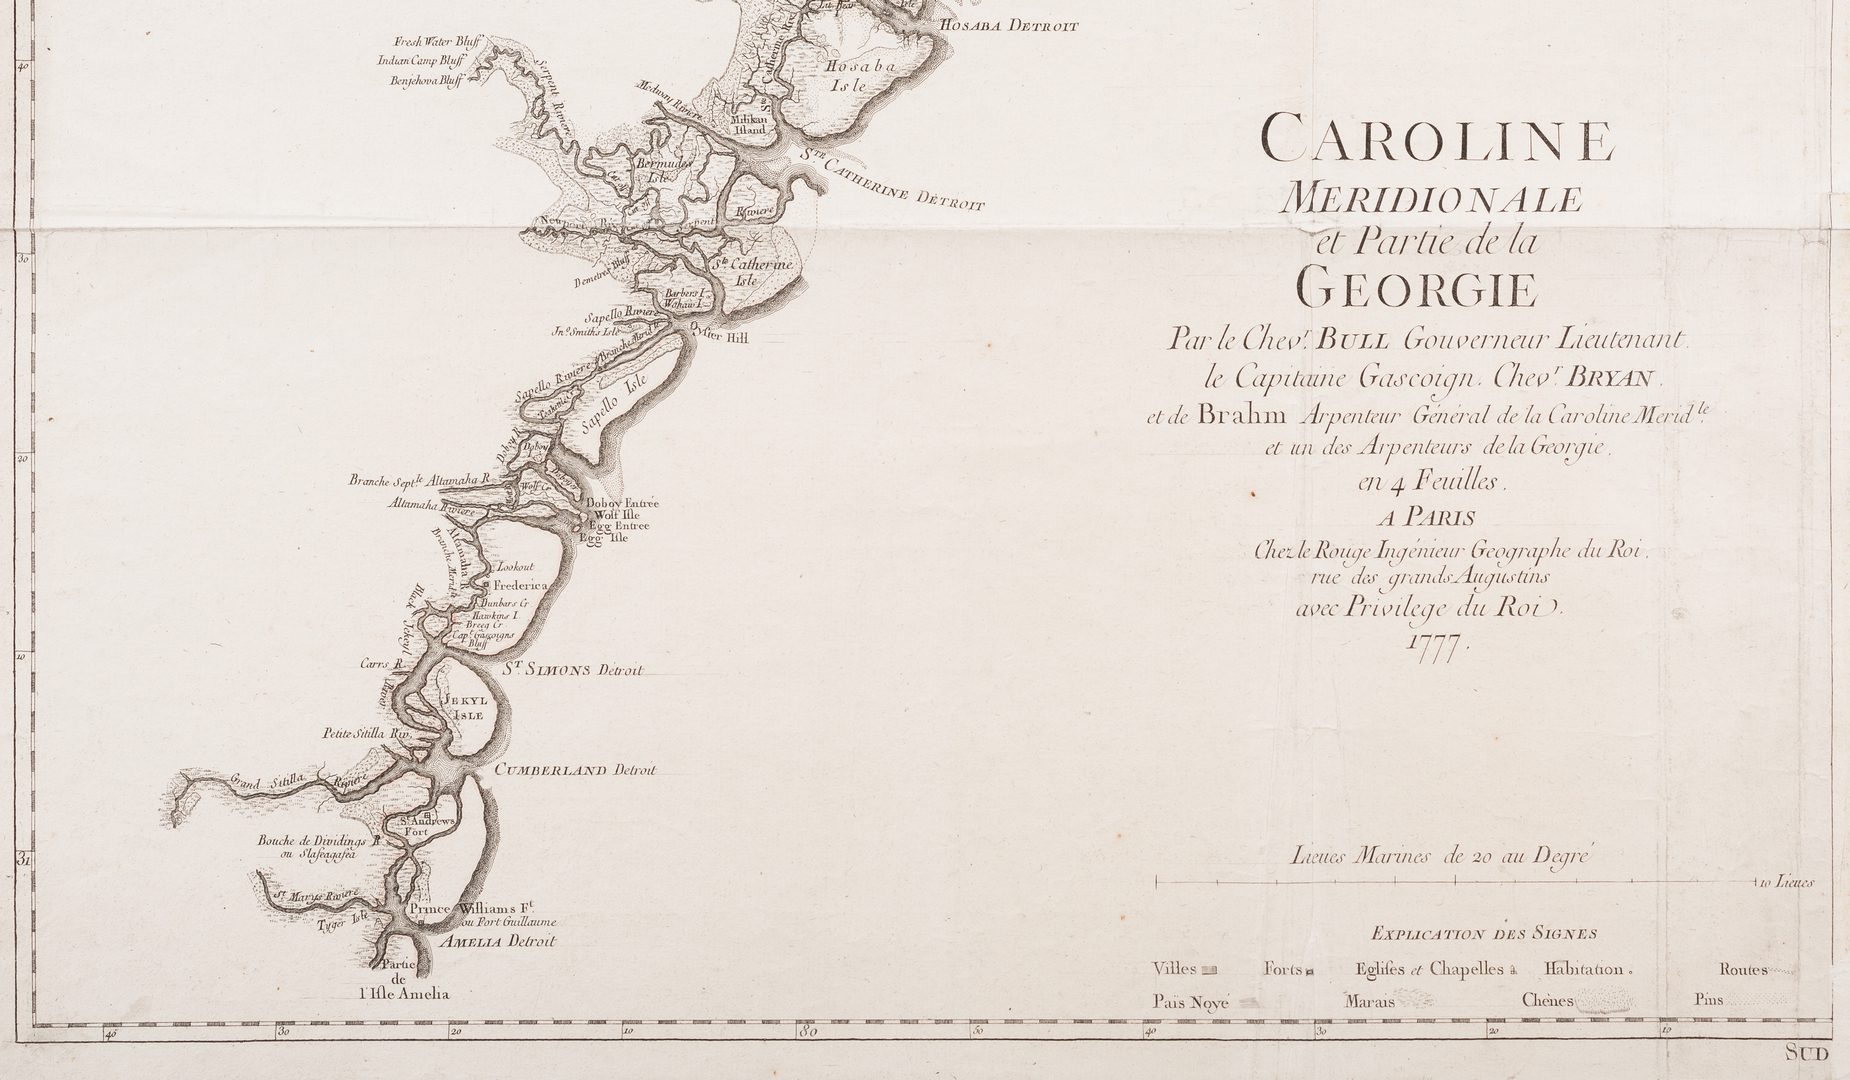 Lot 294: Part of Caroline Meridionale et Partie de la Georgie, 1777